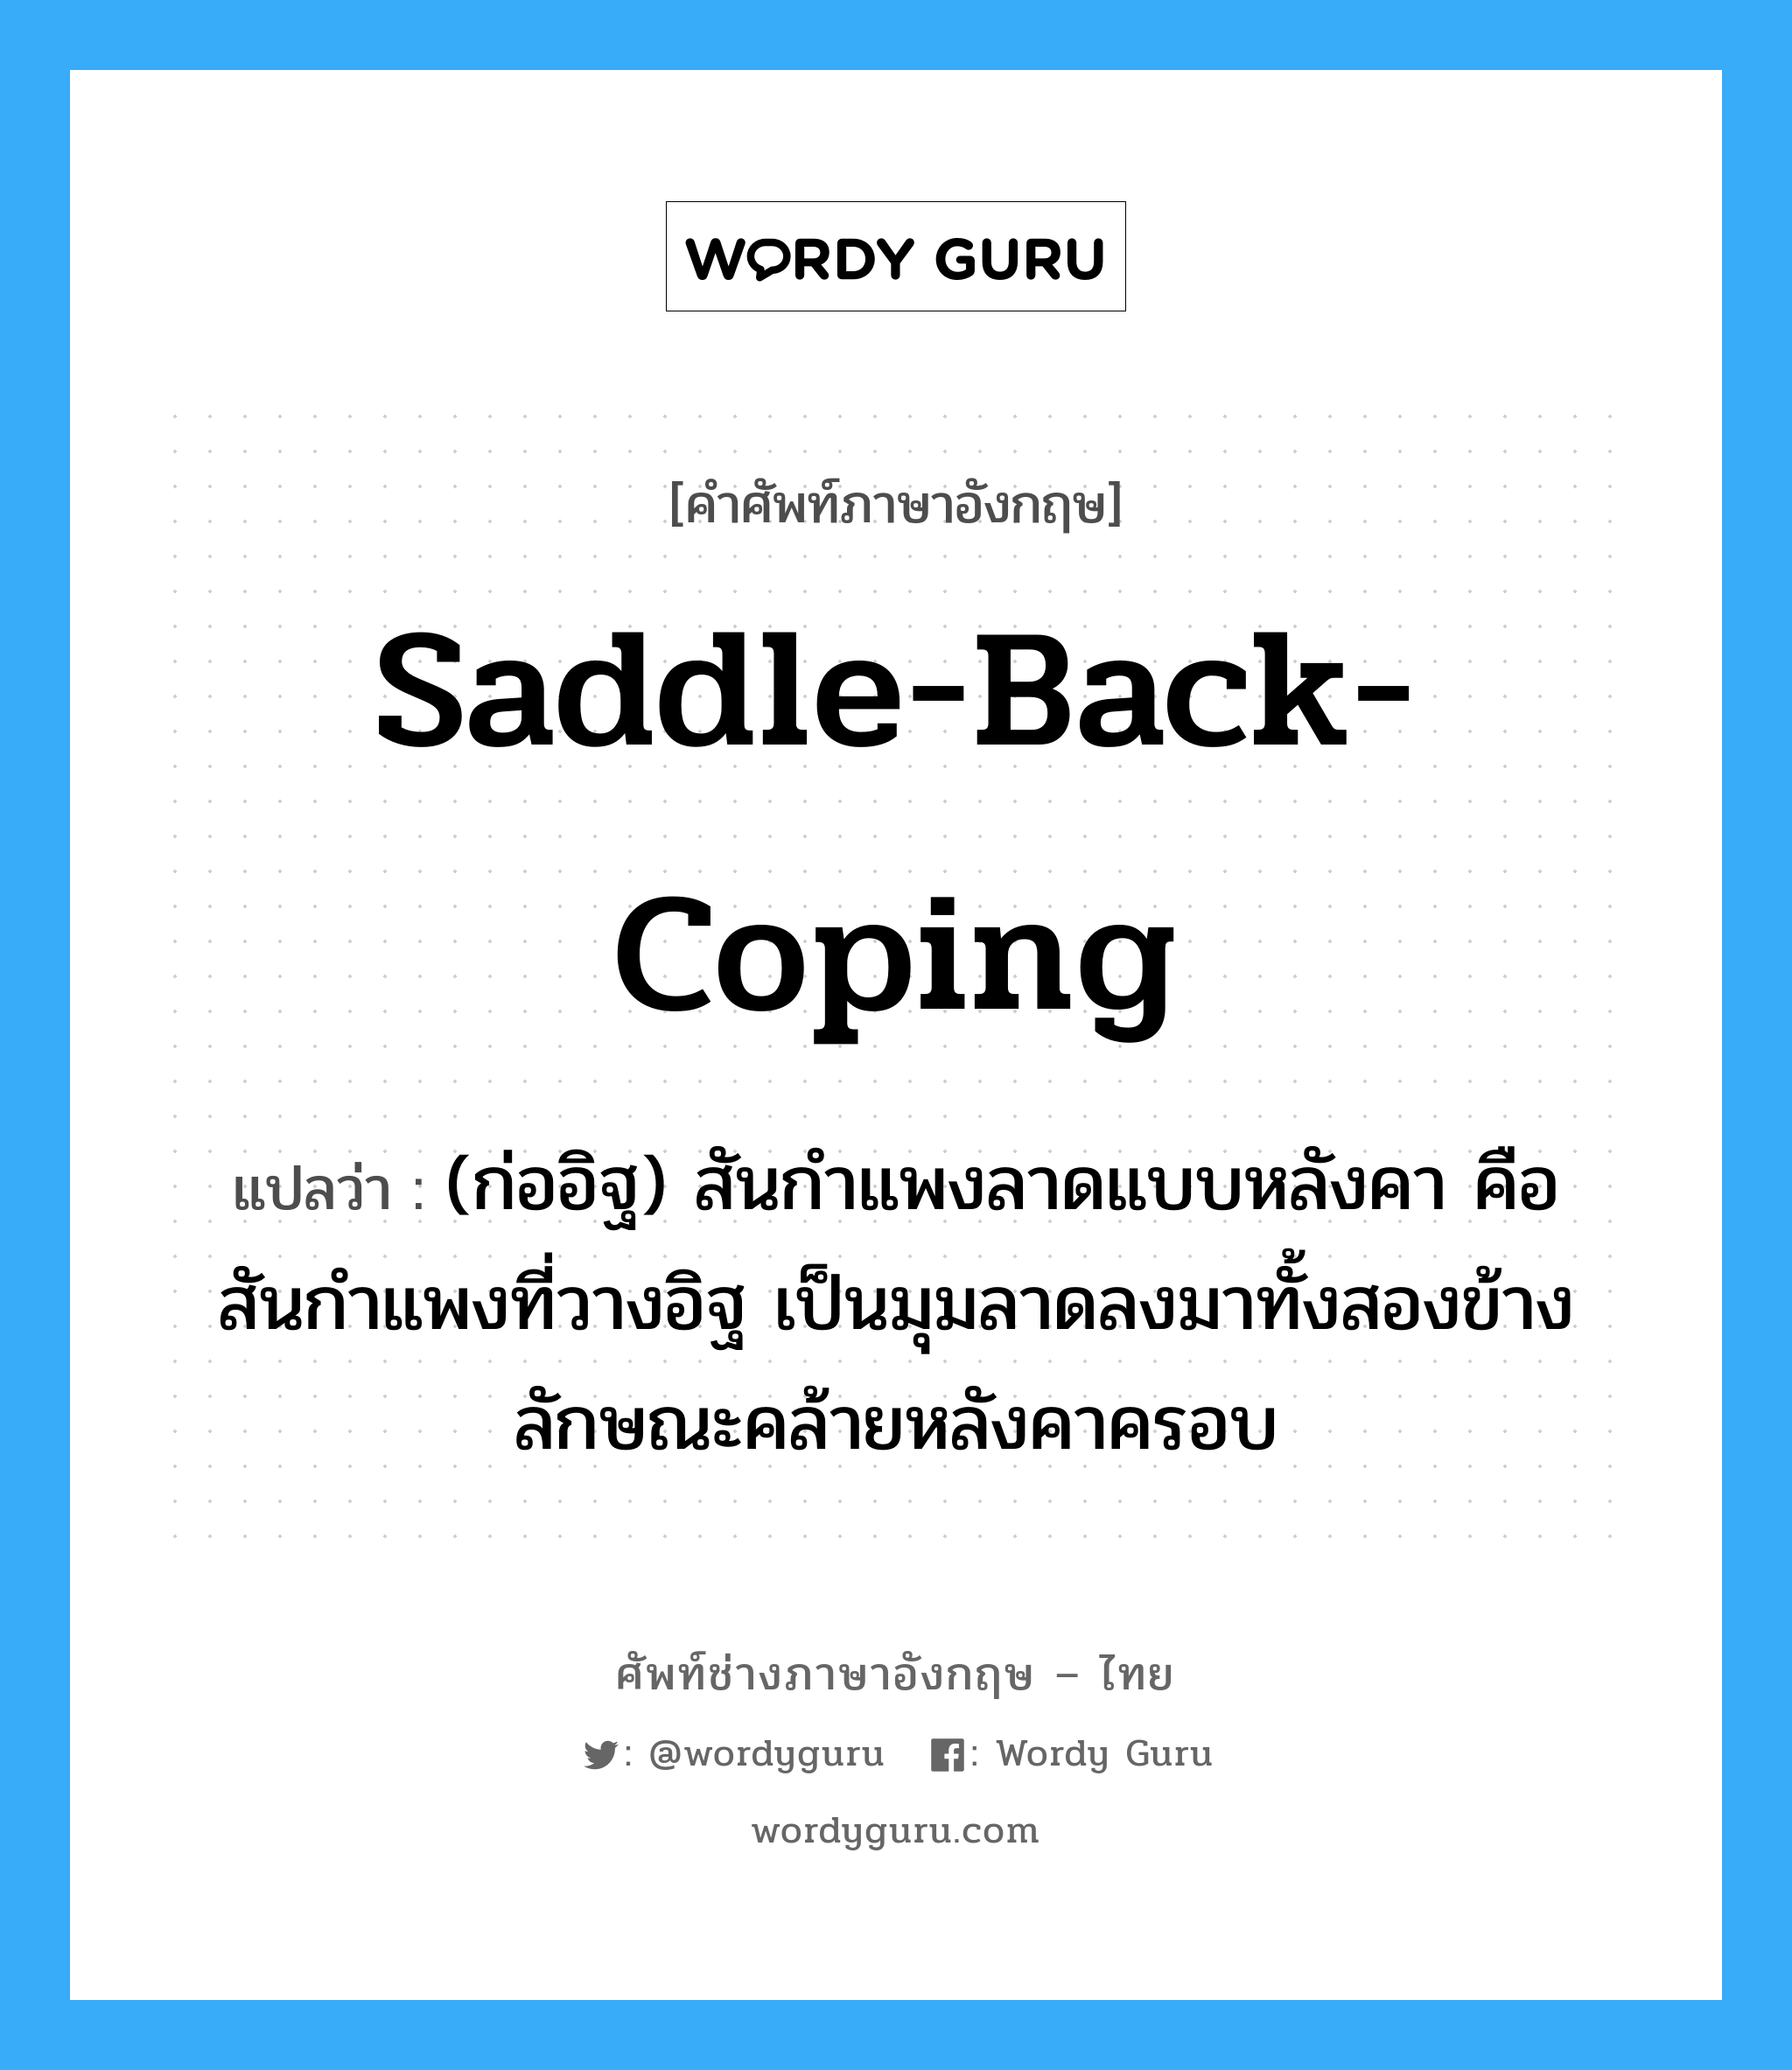 saddle-back coping แปลว่า?, คำศัพท์ช่างภาษาอังกฤษ - ไทย saddle-back-coping คำศัพท์ภาษาอังกฤษ saddle-back-coping แปลว่า (ก่ออิฐ) สันกำแพงลาดแบบหลังคา คือสันกำแพงที่วางอิฐ เป็นมุมลาดลงมาทั้งสองข้าง ลักษณะคล้ายหลังคาครอบ